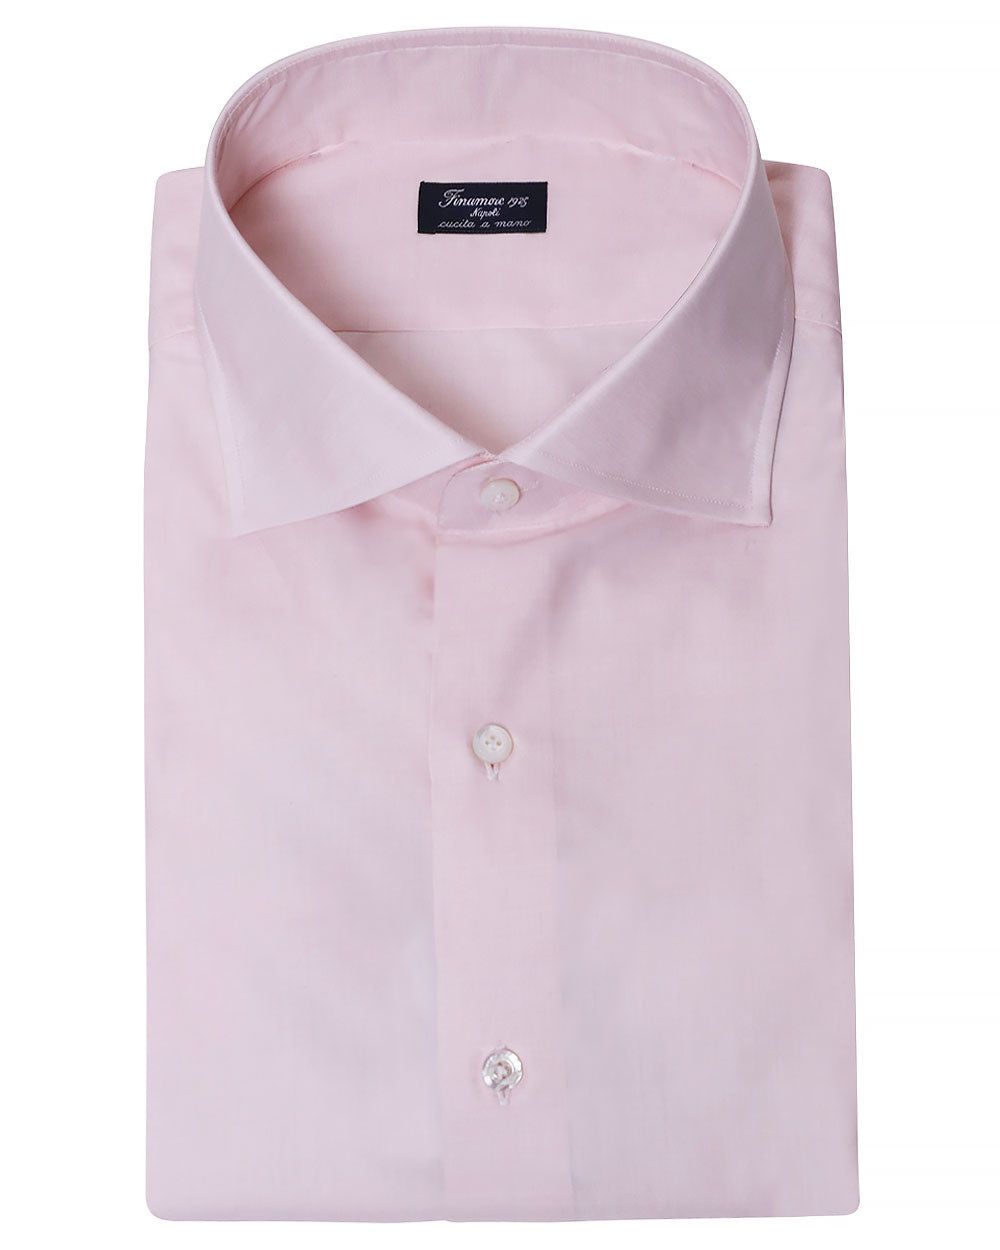 Blush Pink 180 Cotton Sportshirt